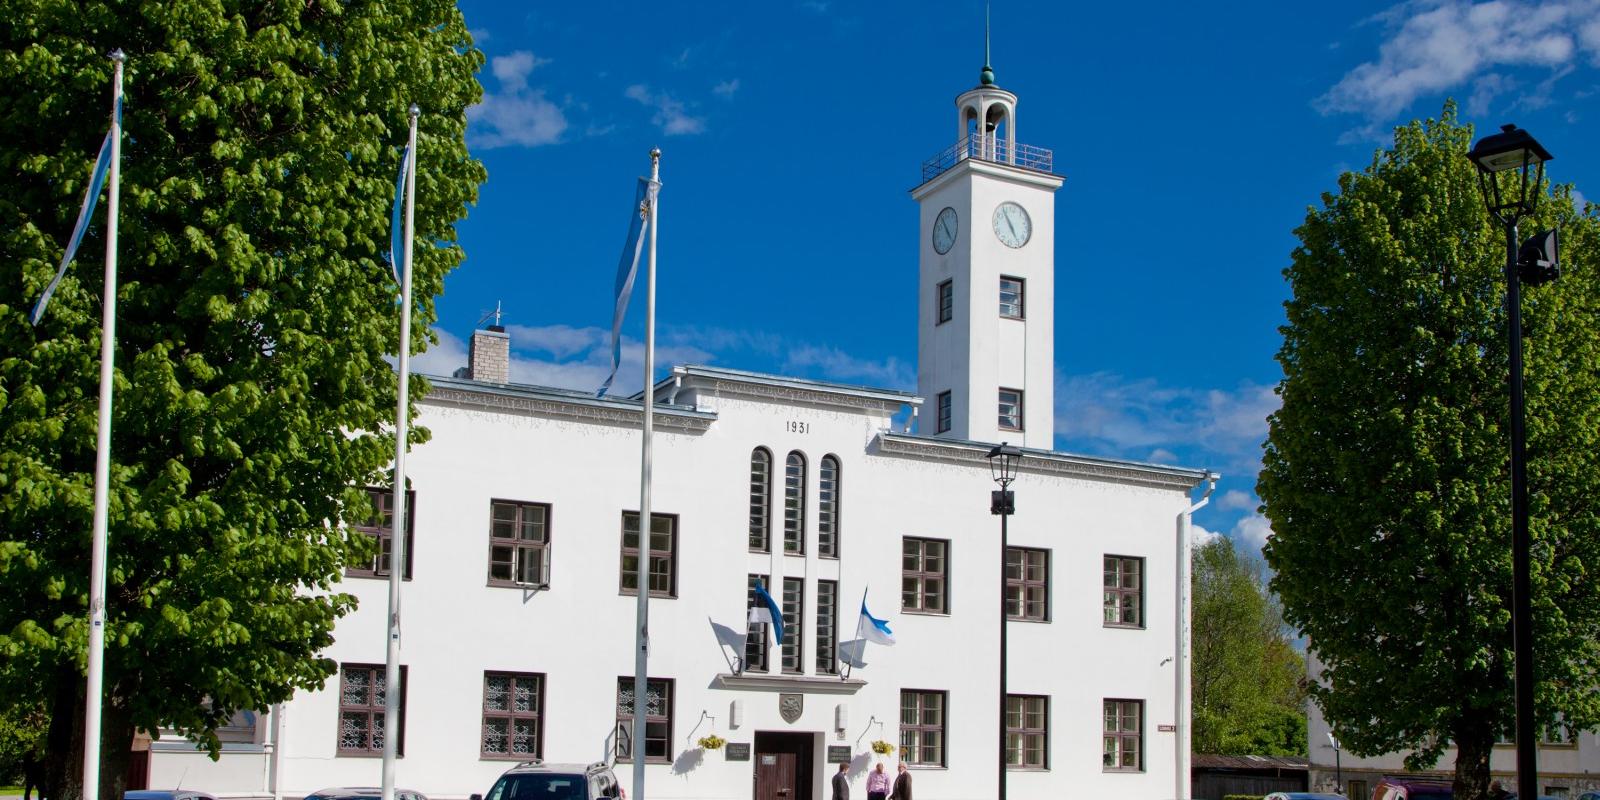 Das Rathaus von Viljandi